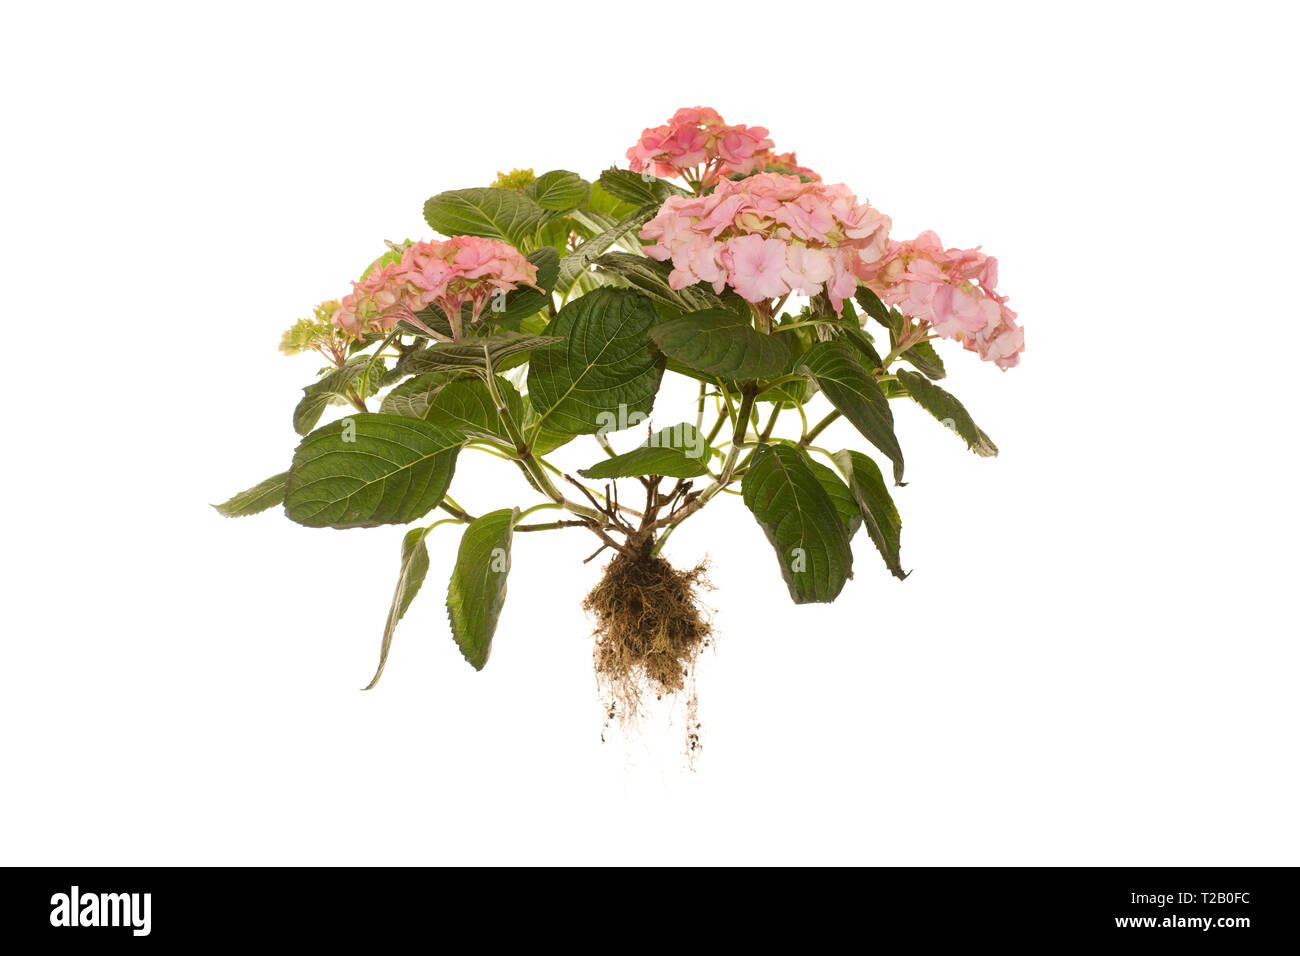 Ensemble de l'Hydrangea macrophylla Rosita plante avec des racines sur ilsoted fond blanc Banque D'Images